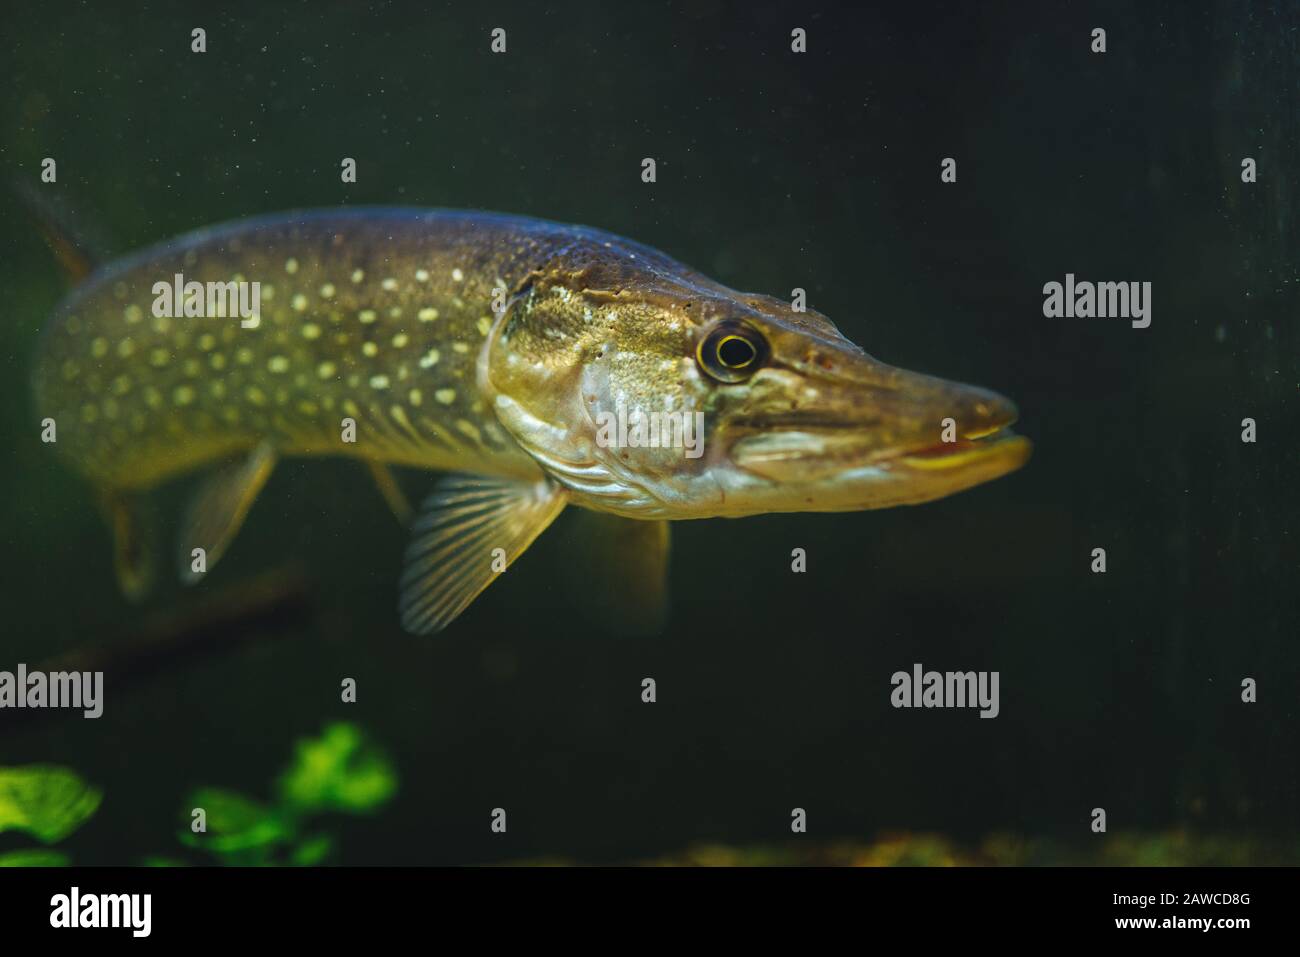 Pike fish underwater closeup scene Stock Photo